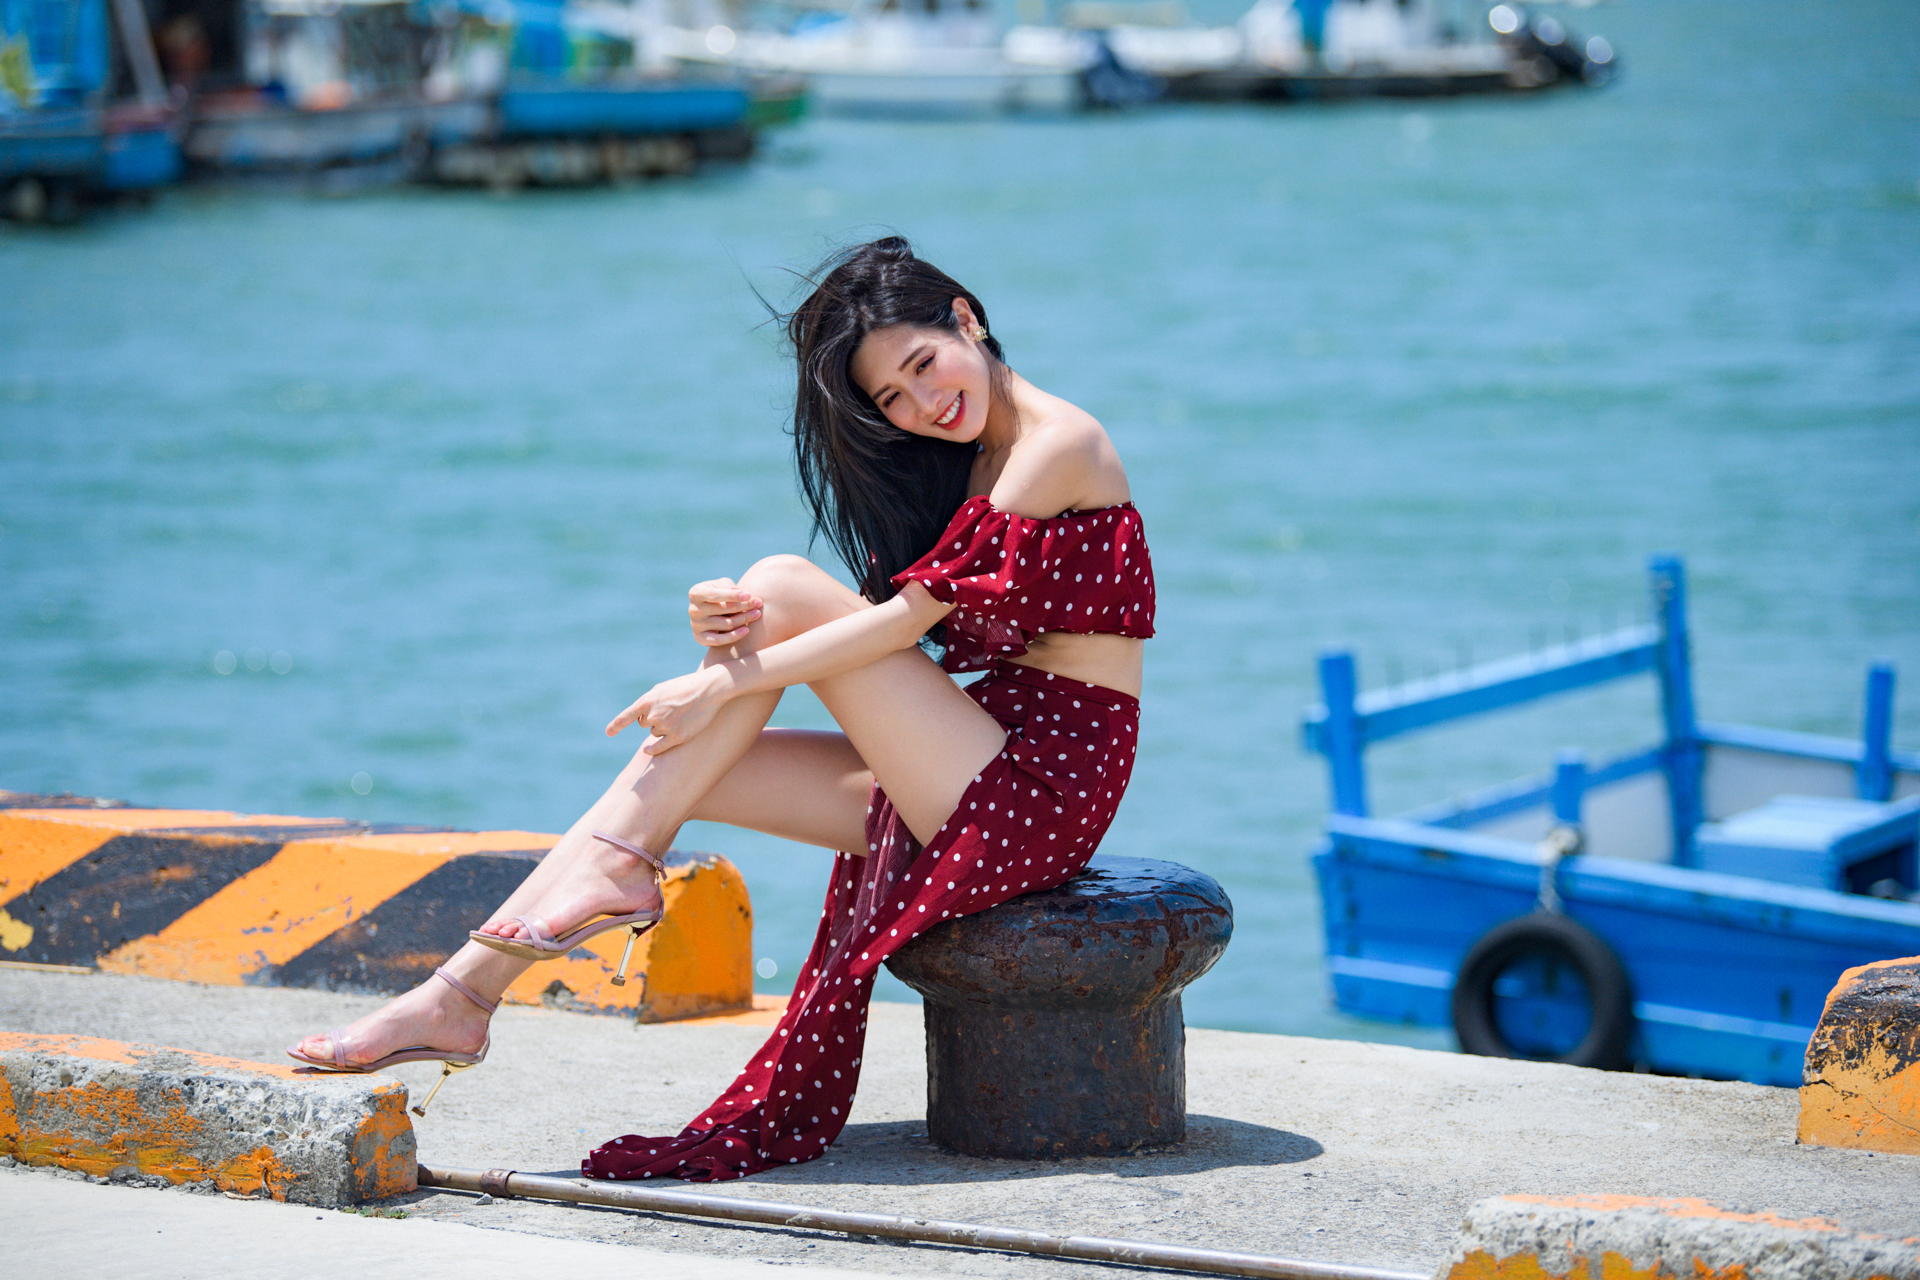 Asian Model Women Long Hair Dark Hair Long Skirt Short Tops Sitting Sea Pier Barefoot Sandal Boat De 1920x1280